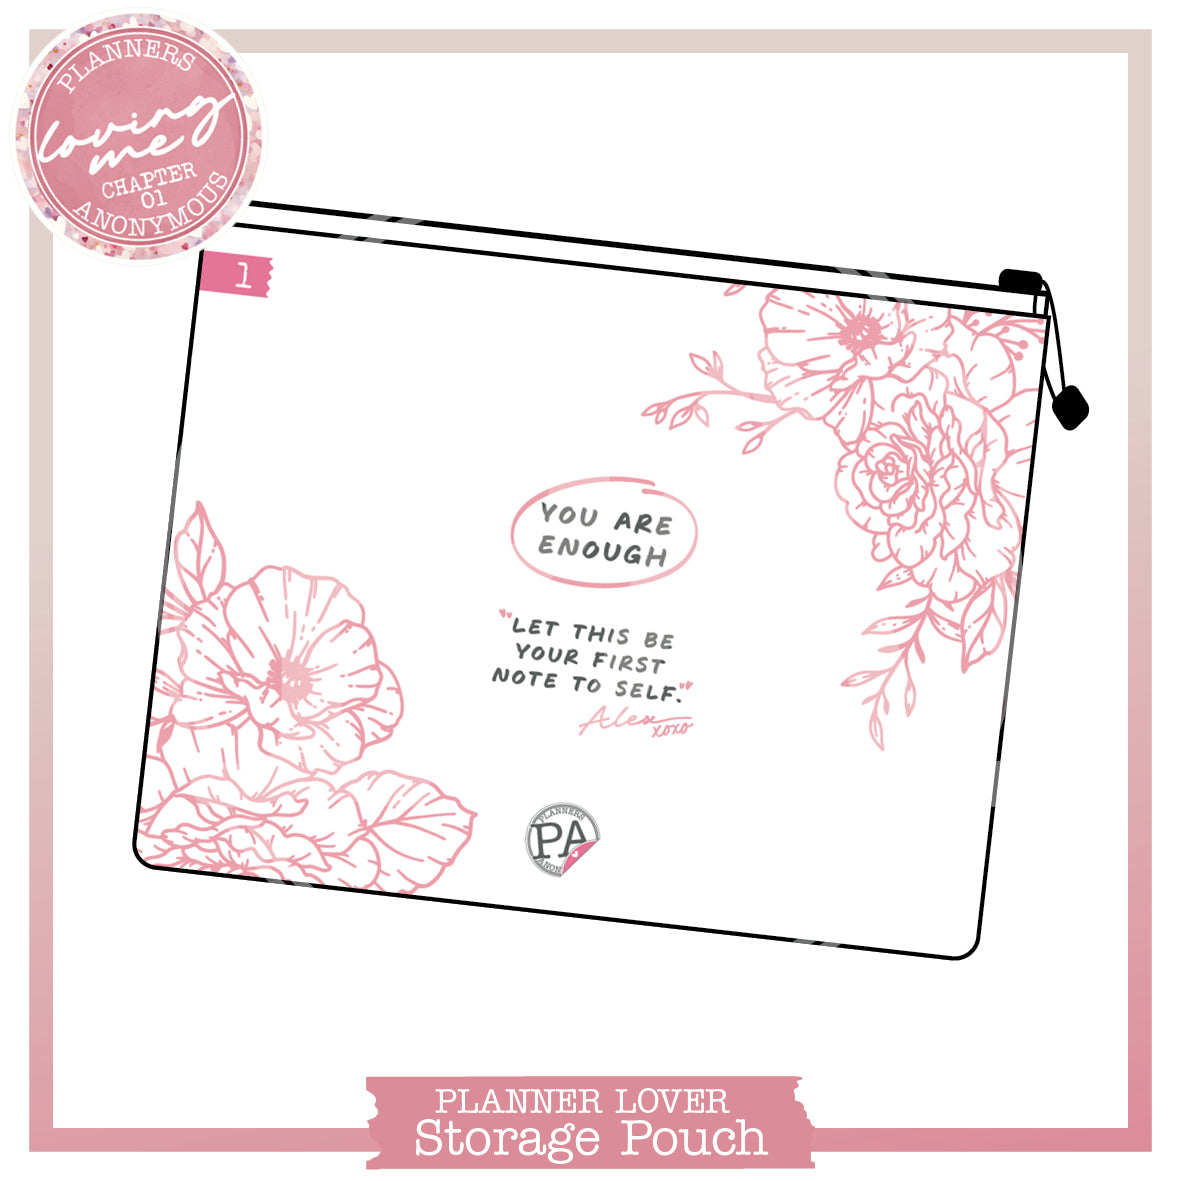 CH01: Loving Me Planner Lover Kit